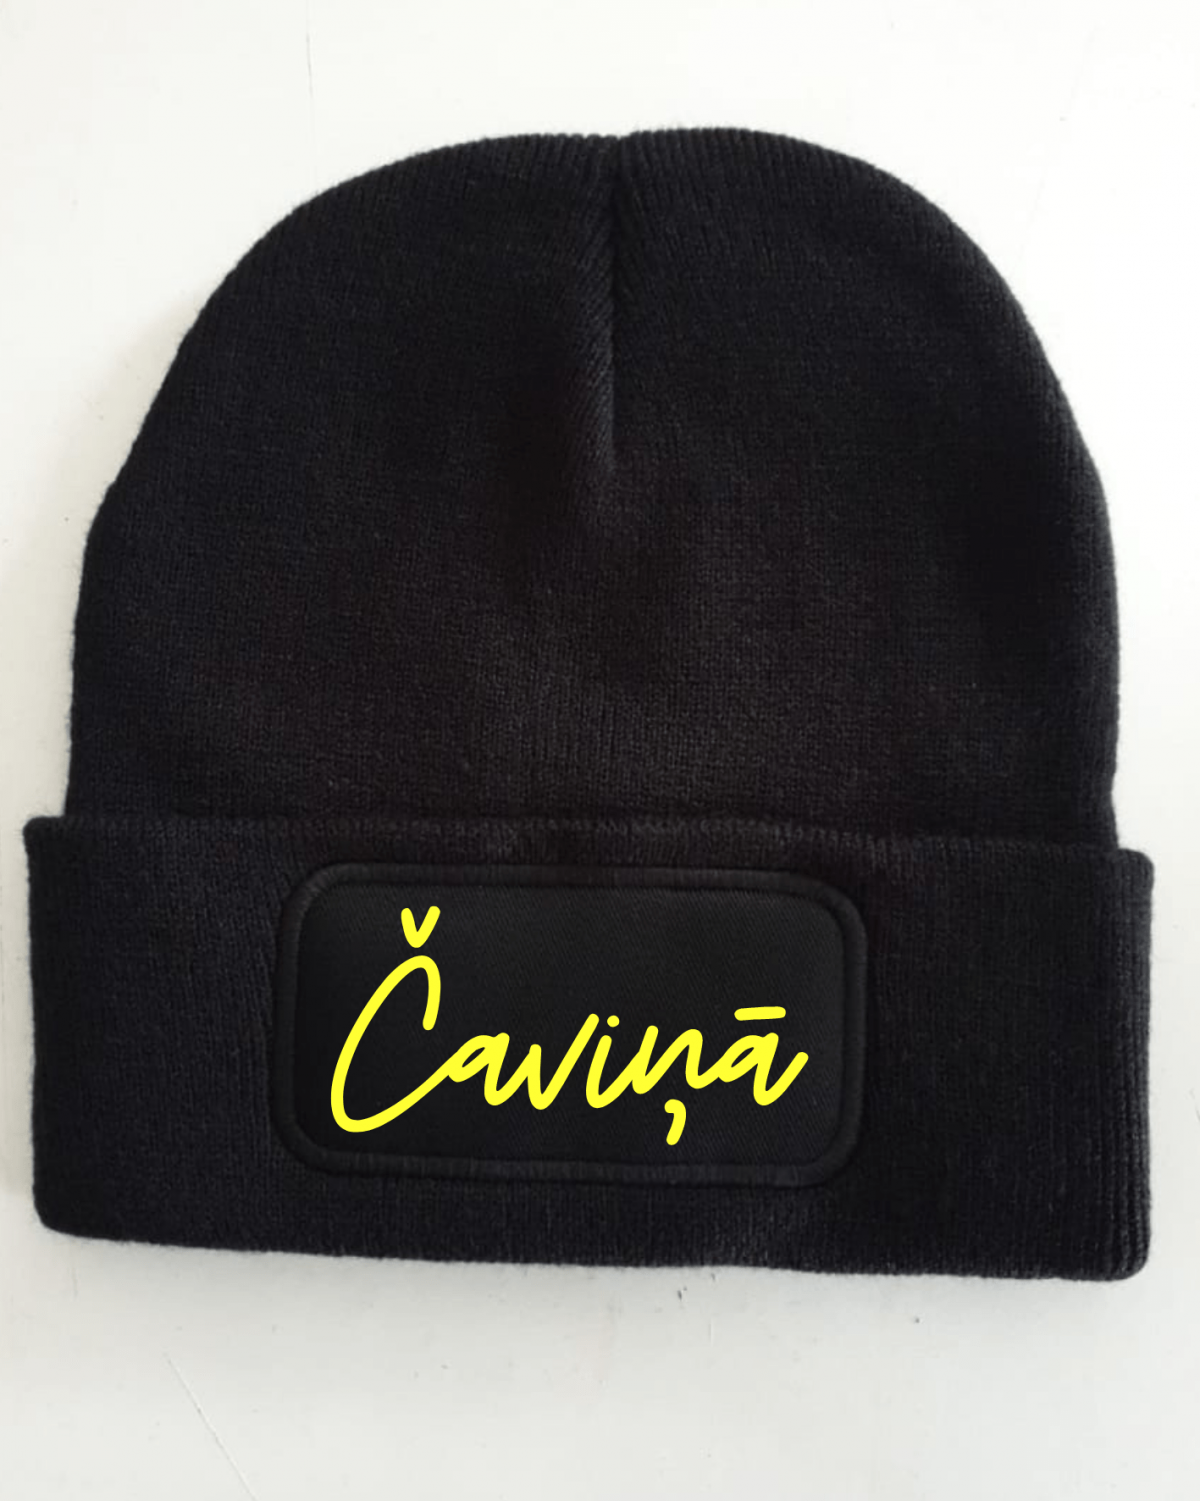 Adīta cepure melnā krāsā ar neona apdruku "Čaviņā", lieliska dāvana